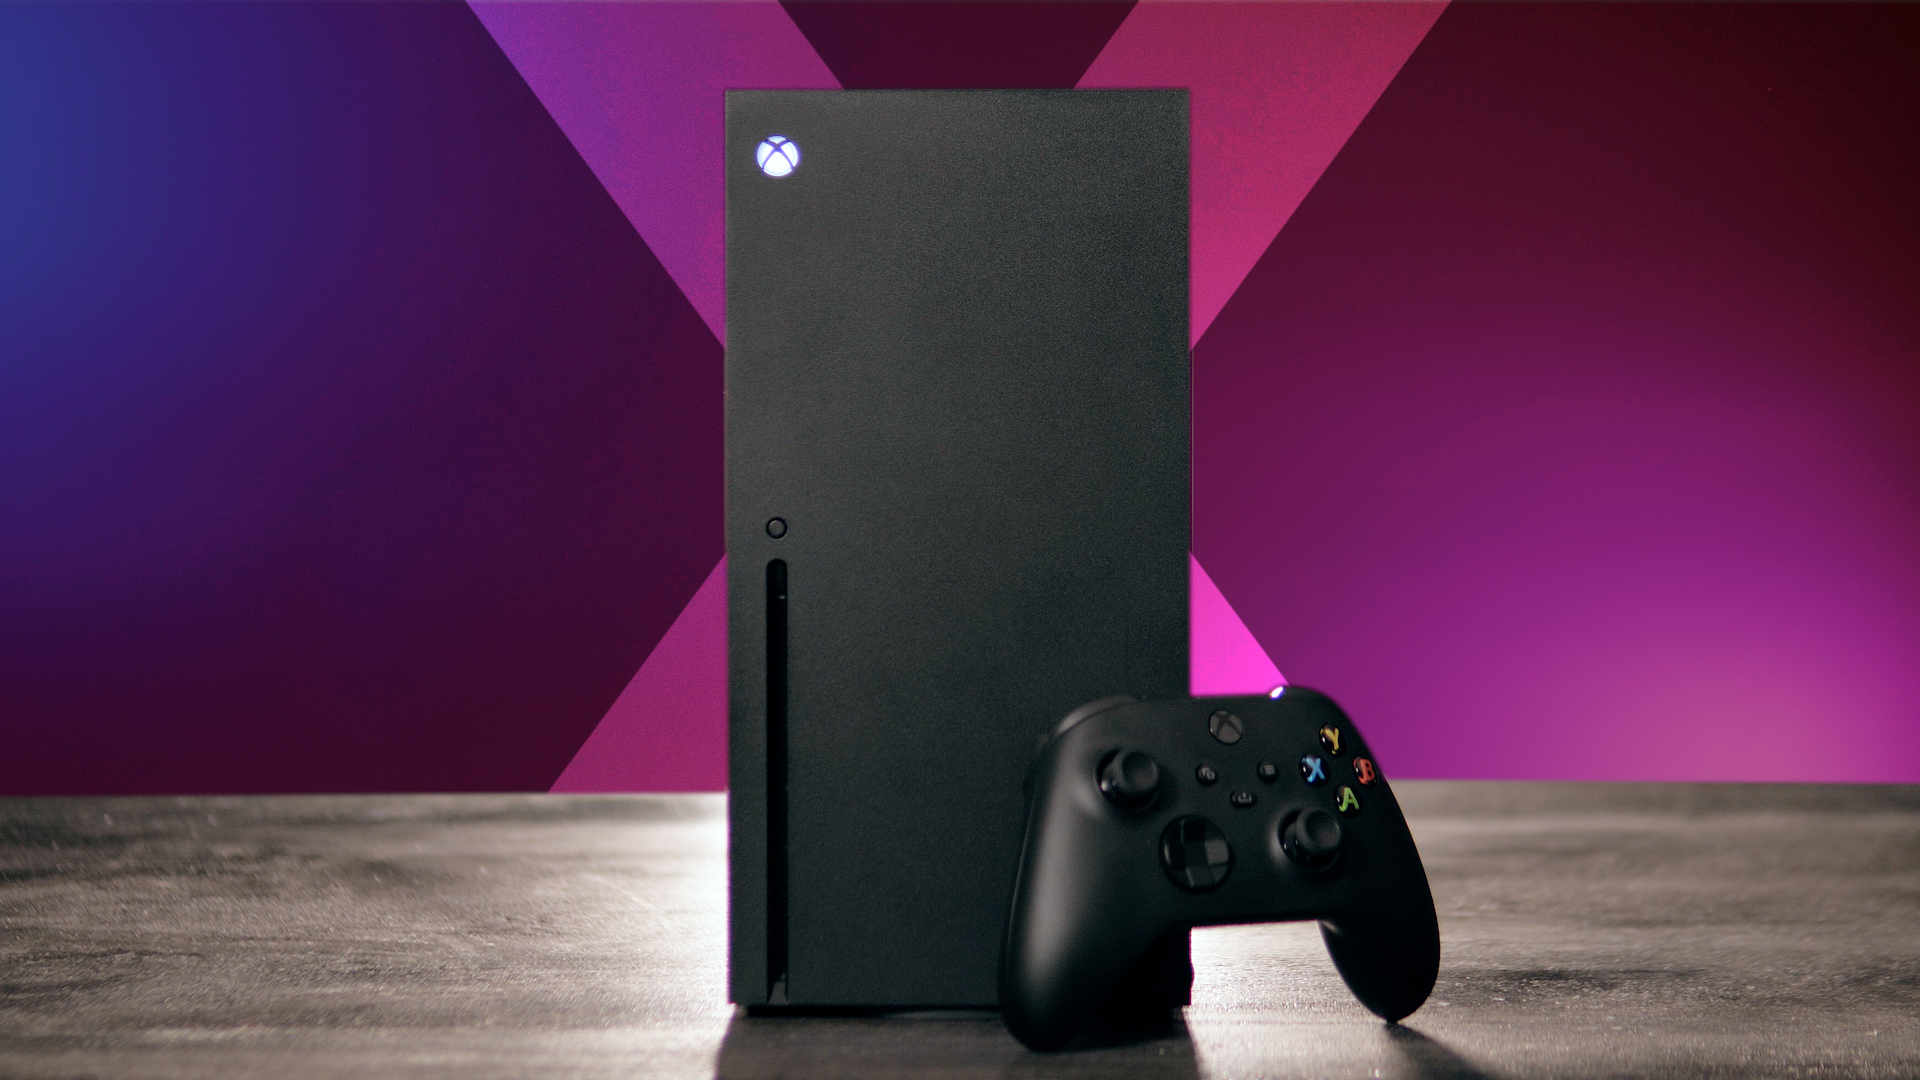 Xbox Series X : notre avis sur les premiers jeux next-gen